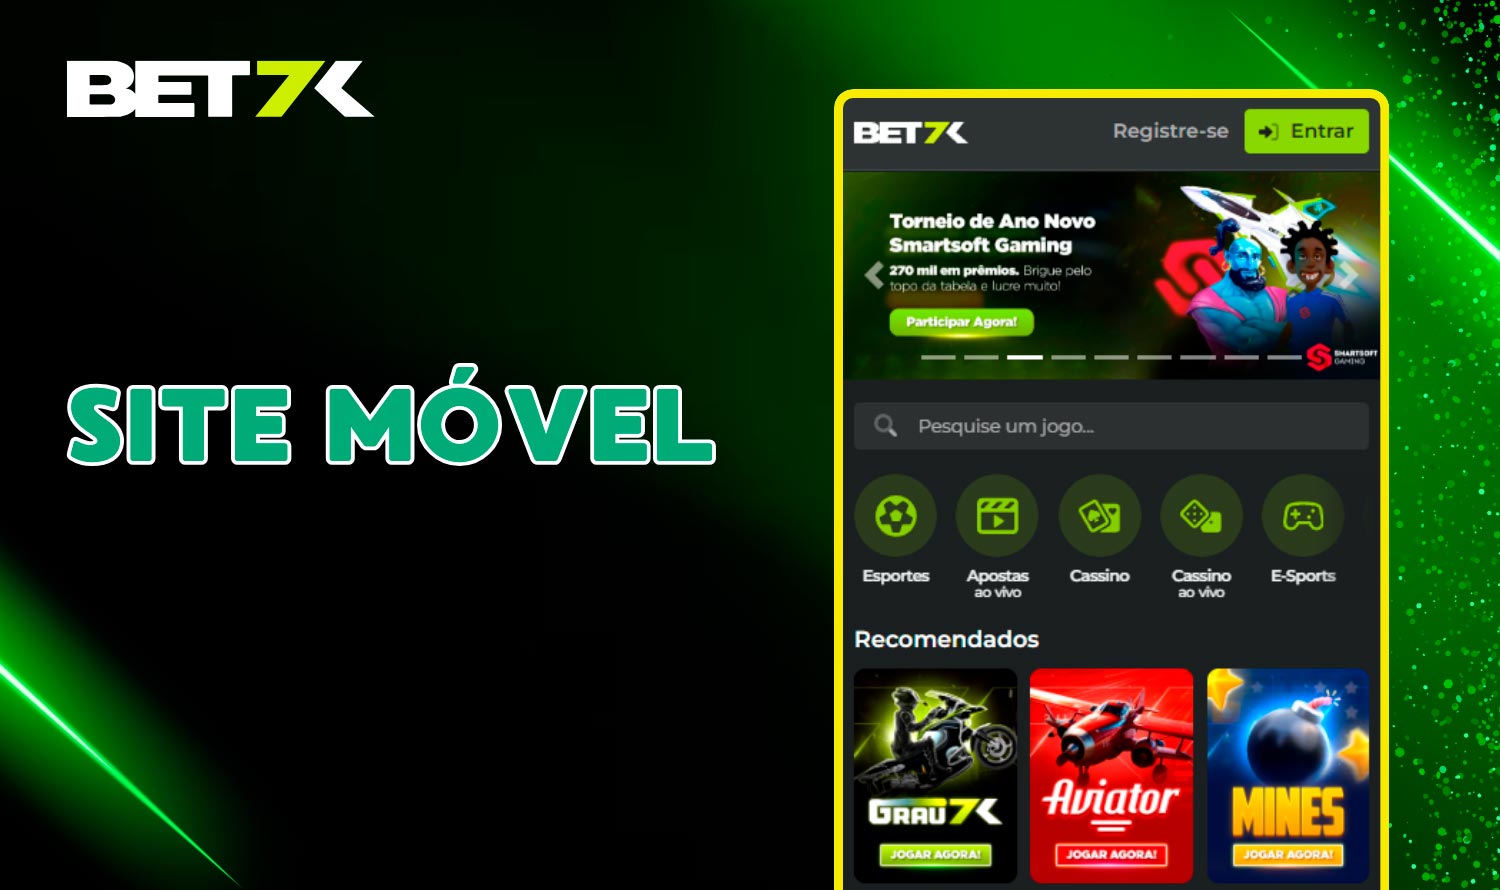 Faça apostas esportivas e jogos no Bet7k cassino com a versão móvel do site